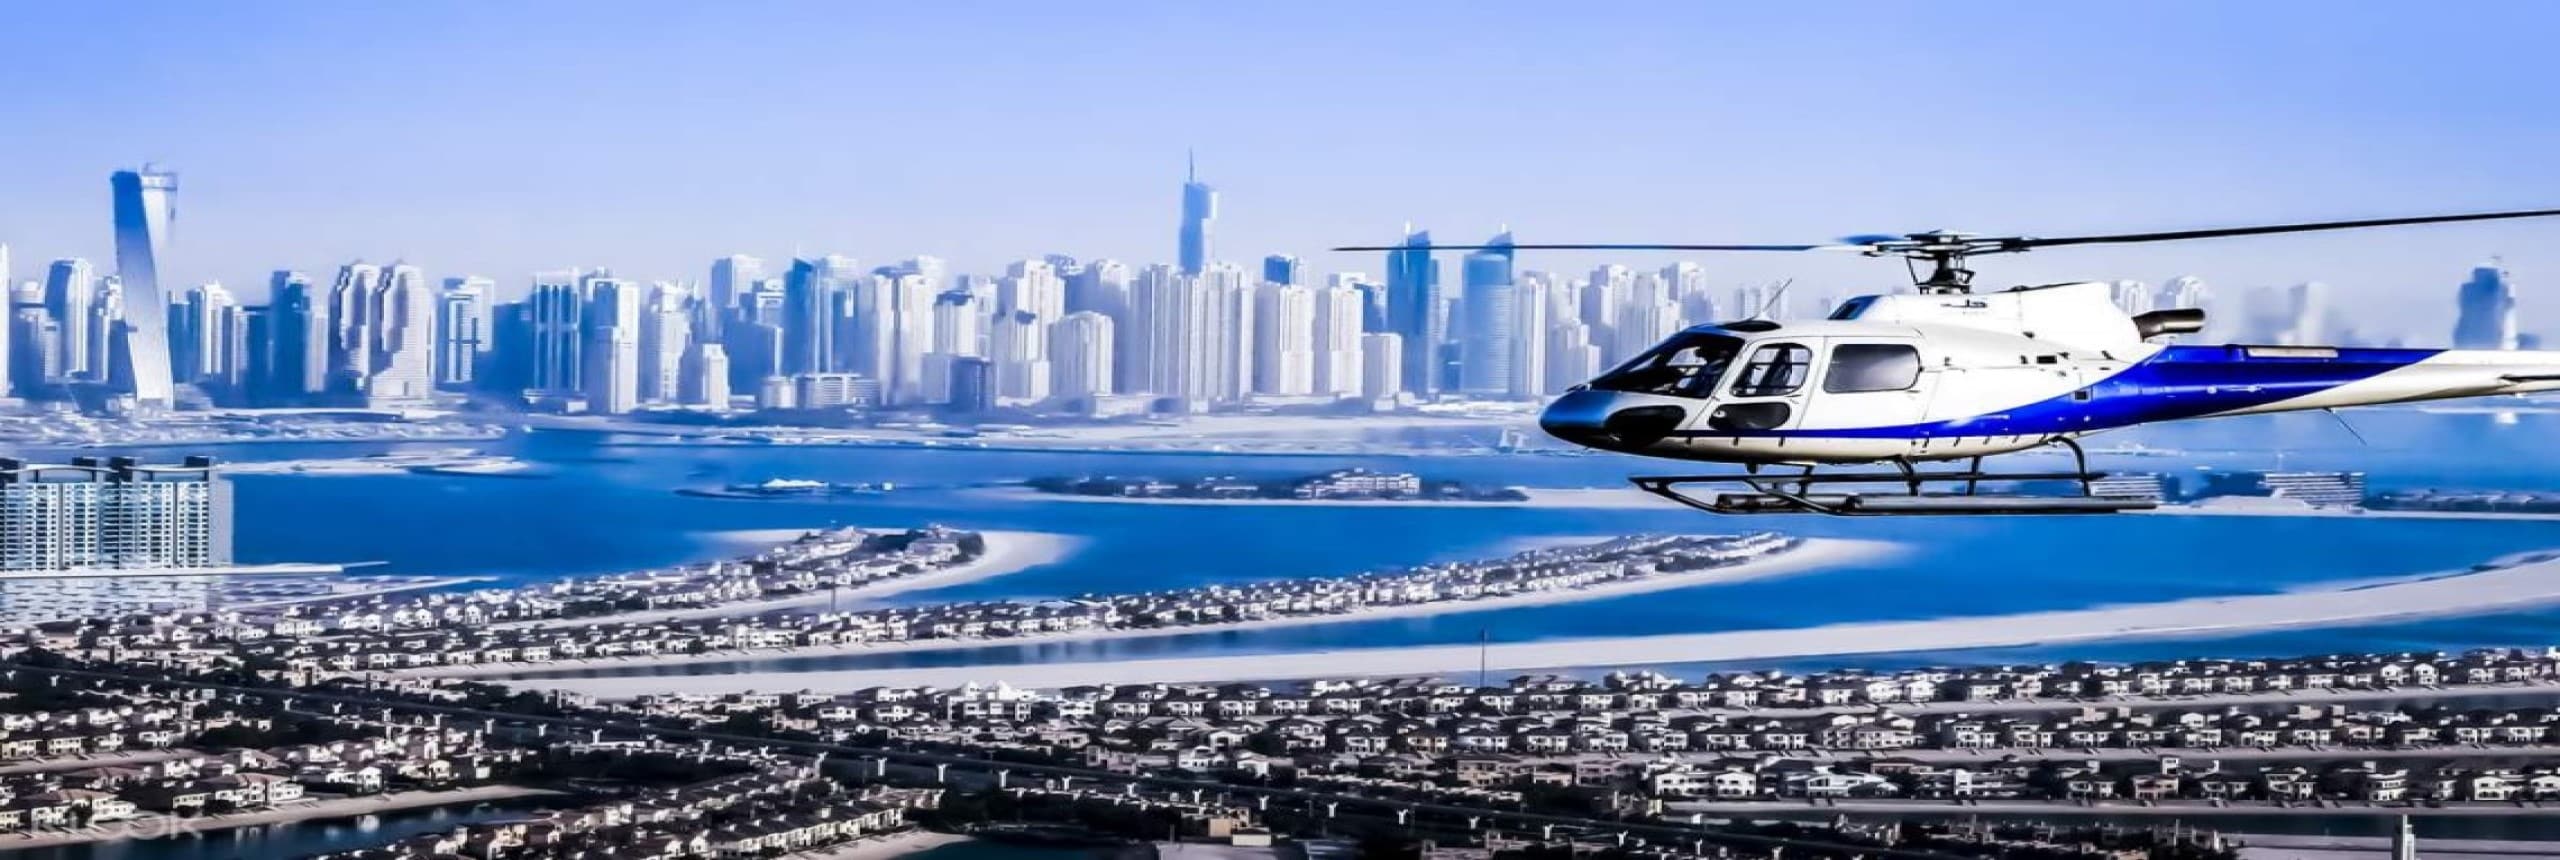 Recorregut en helicòpter de Dubai: recorregut privat des de l’Atlàntida